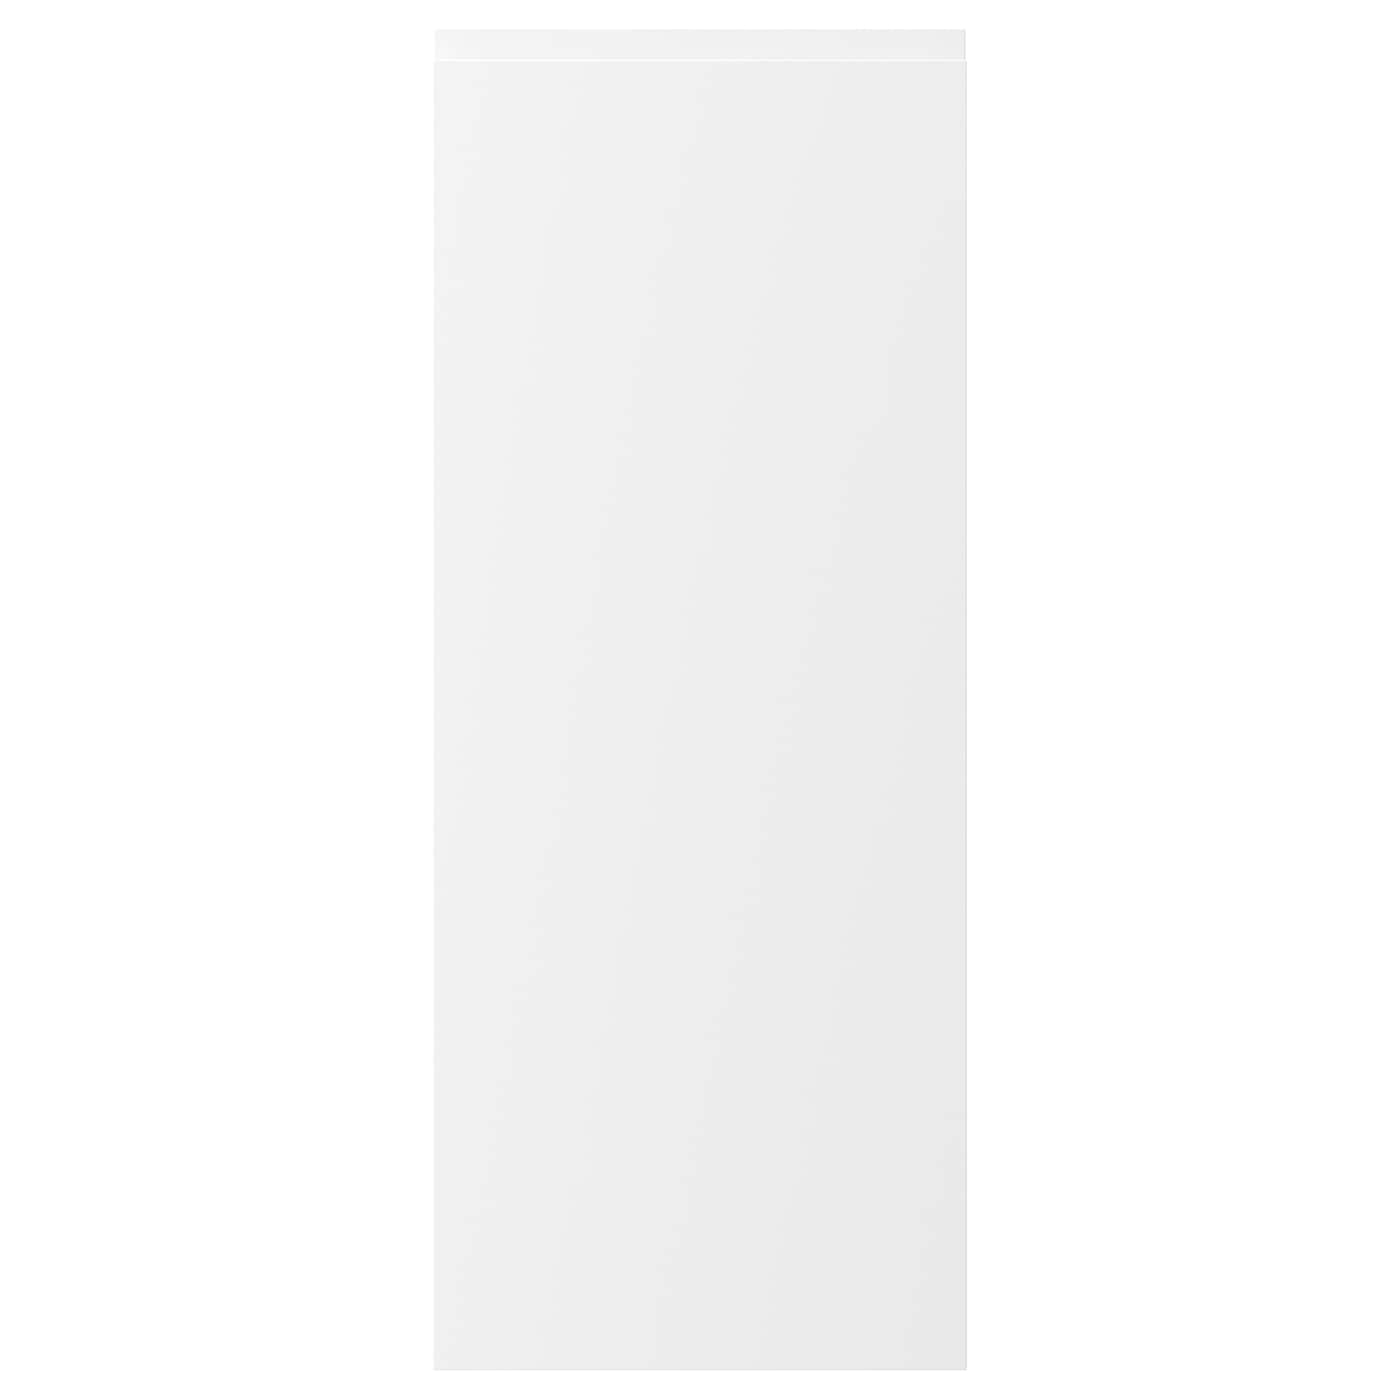 Дверца - IKEA VOXTORP, 100х40 см, матовый белый, ВОКСТОРП ИКЕА